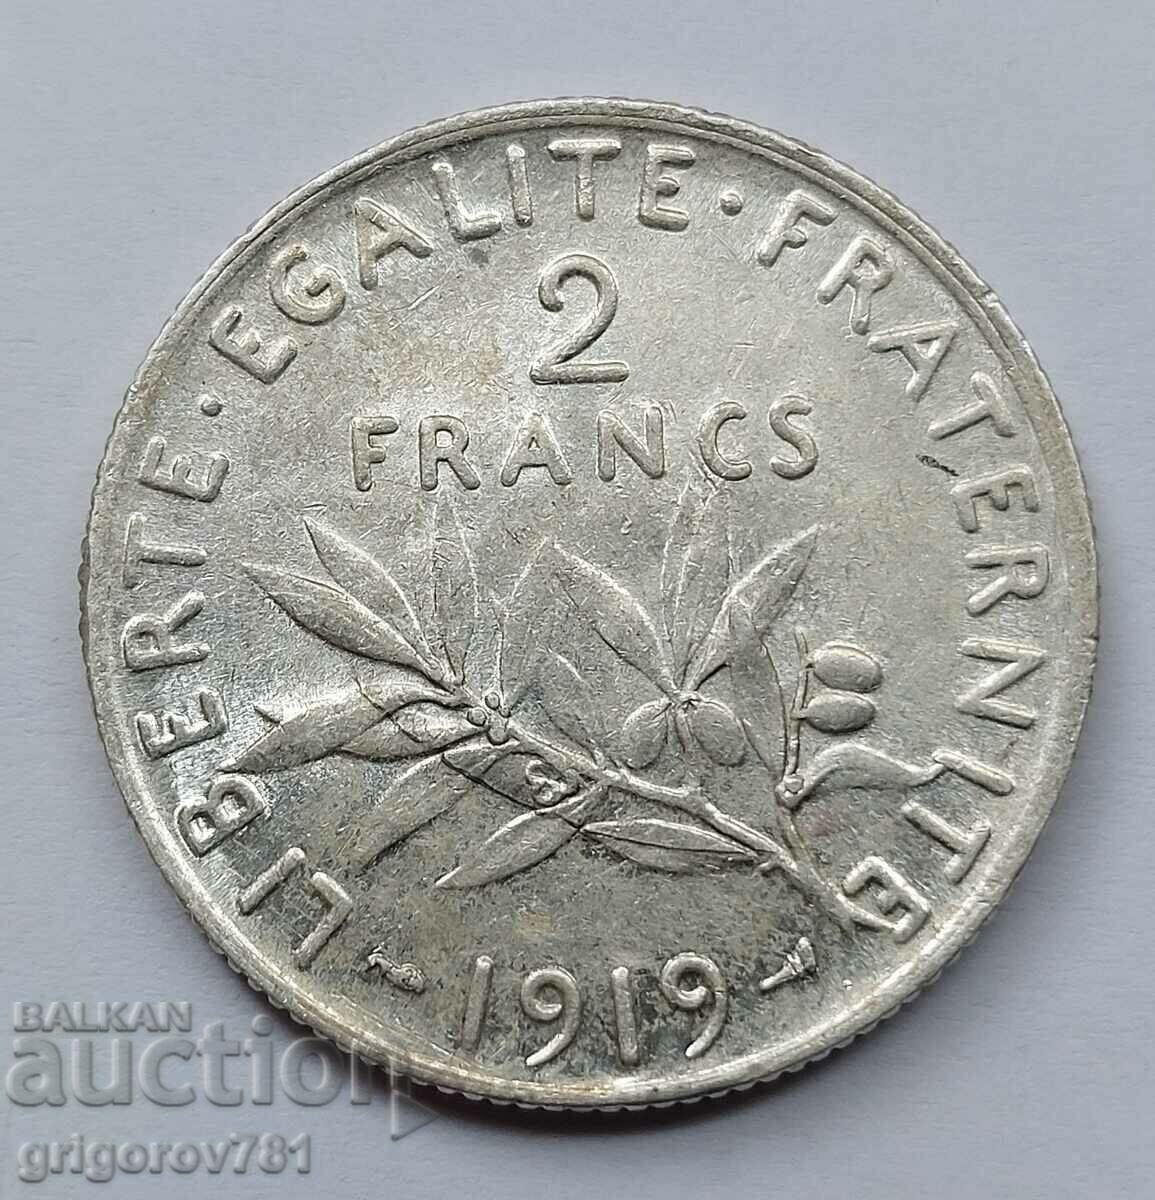 2 Franci Argint Franta 1919 - Moneda de argint #140